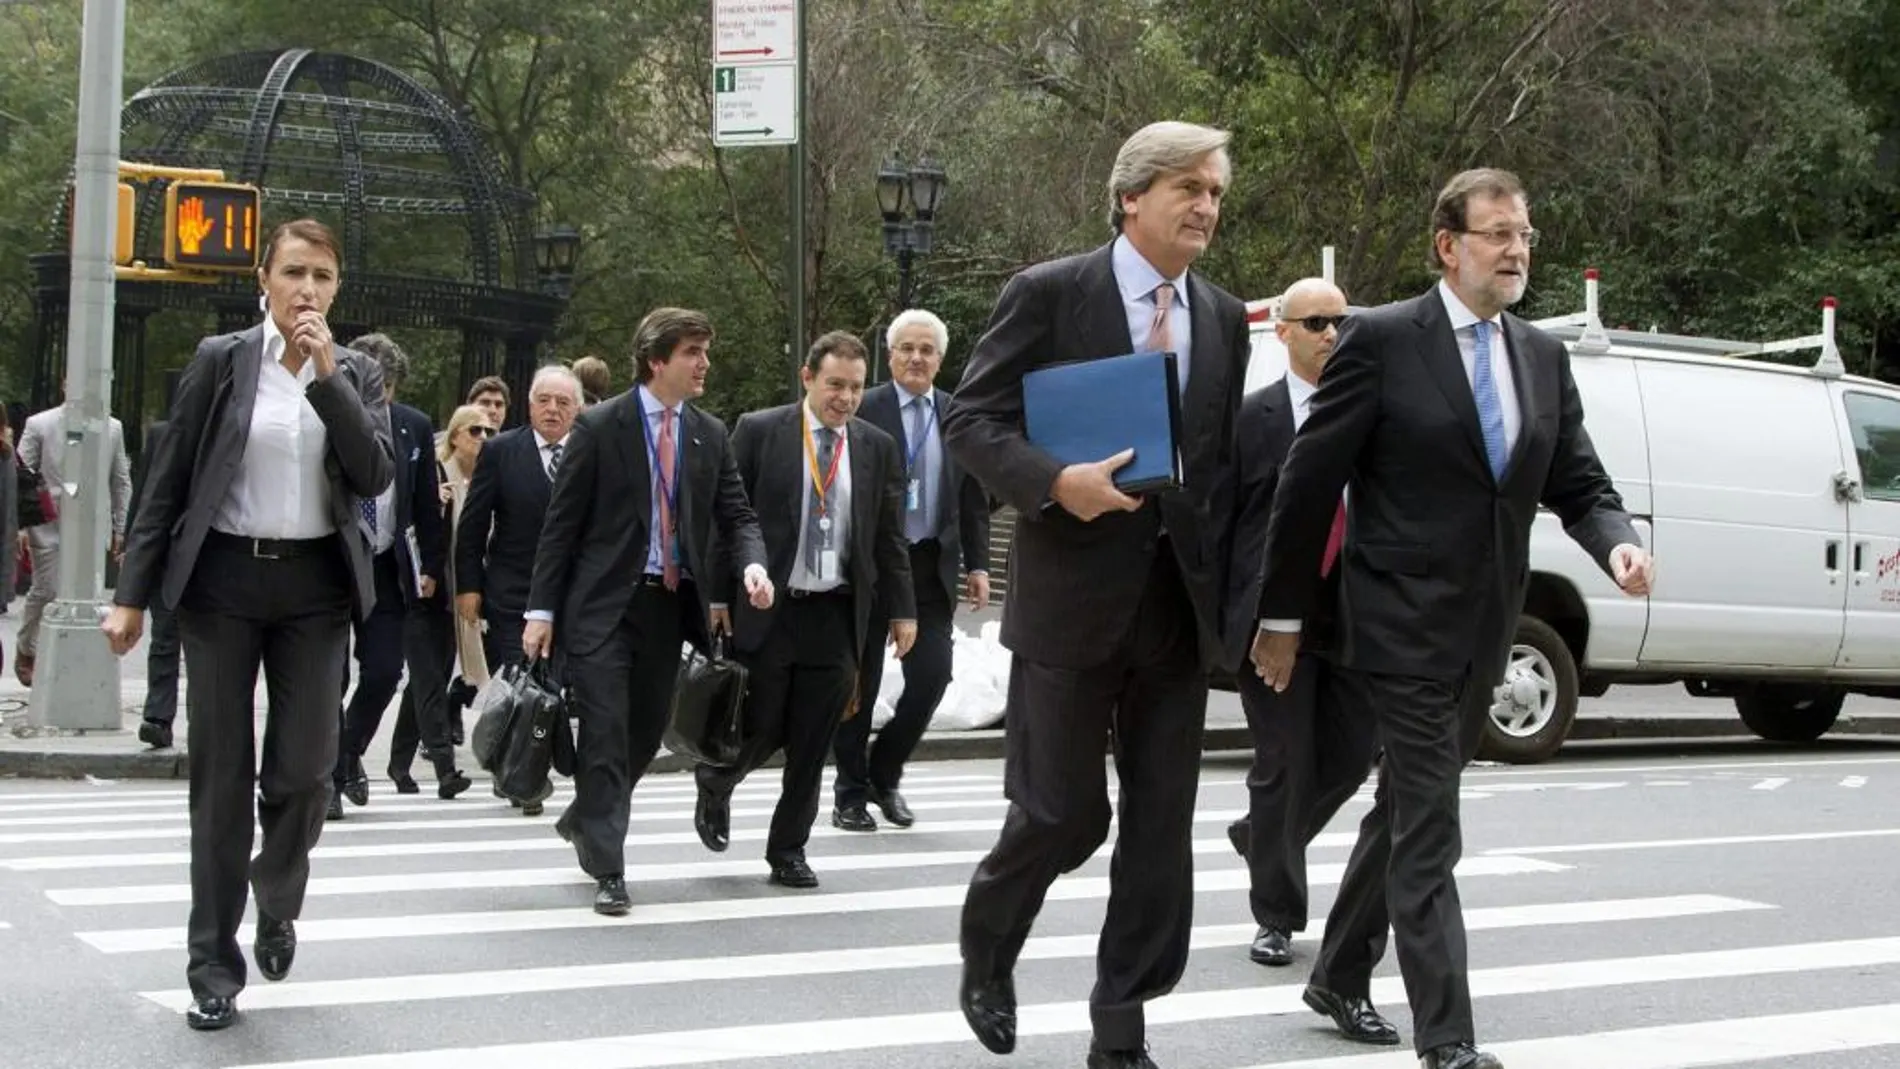 El presidente del Gobierno, Mariano Rajoy (d), junto al representante permanente de España ante las Naciones Unidas, el embajador Román Oyarzun, tras presidir hoy la sesión del Consejo de Seguridad de Naciones Unidas